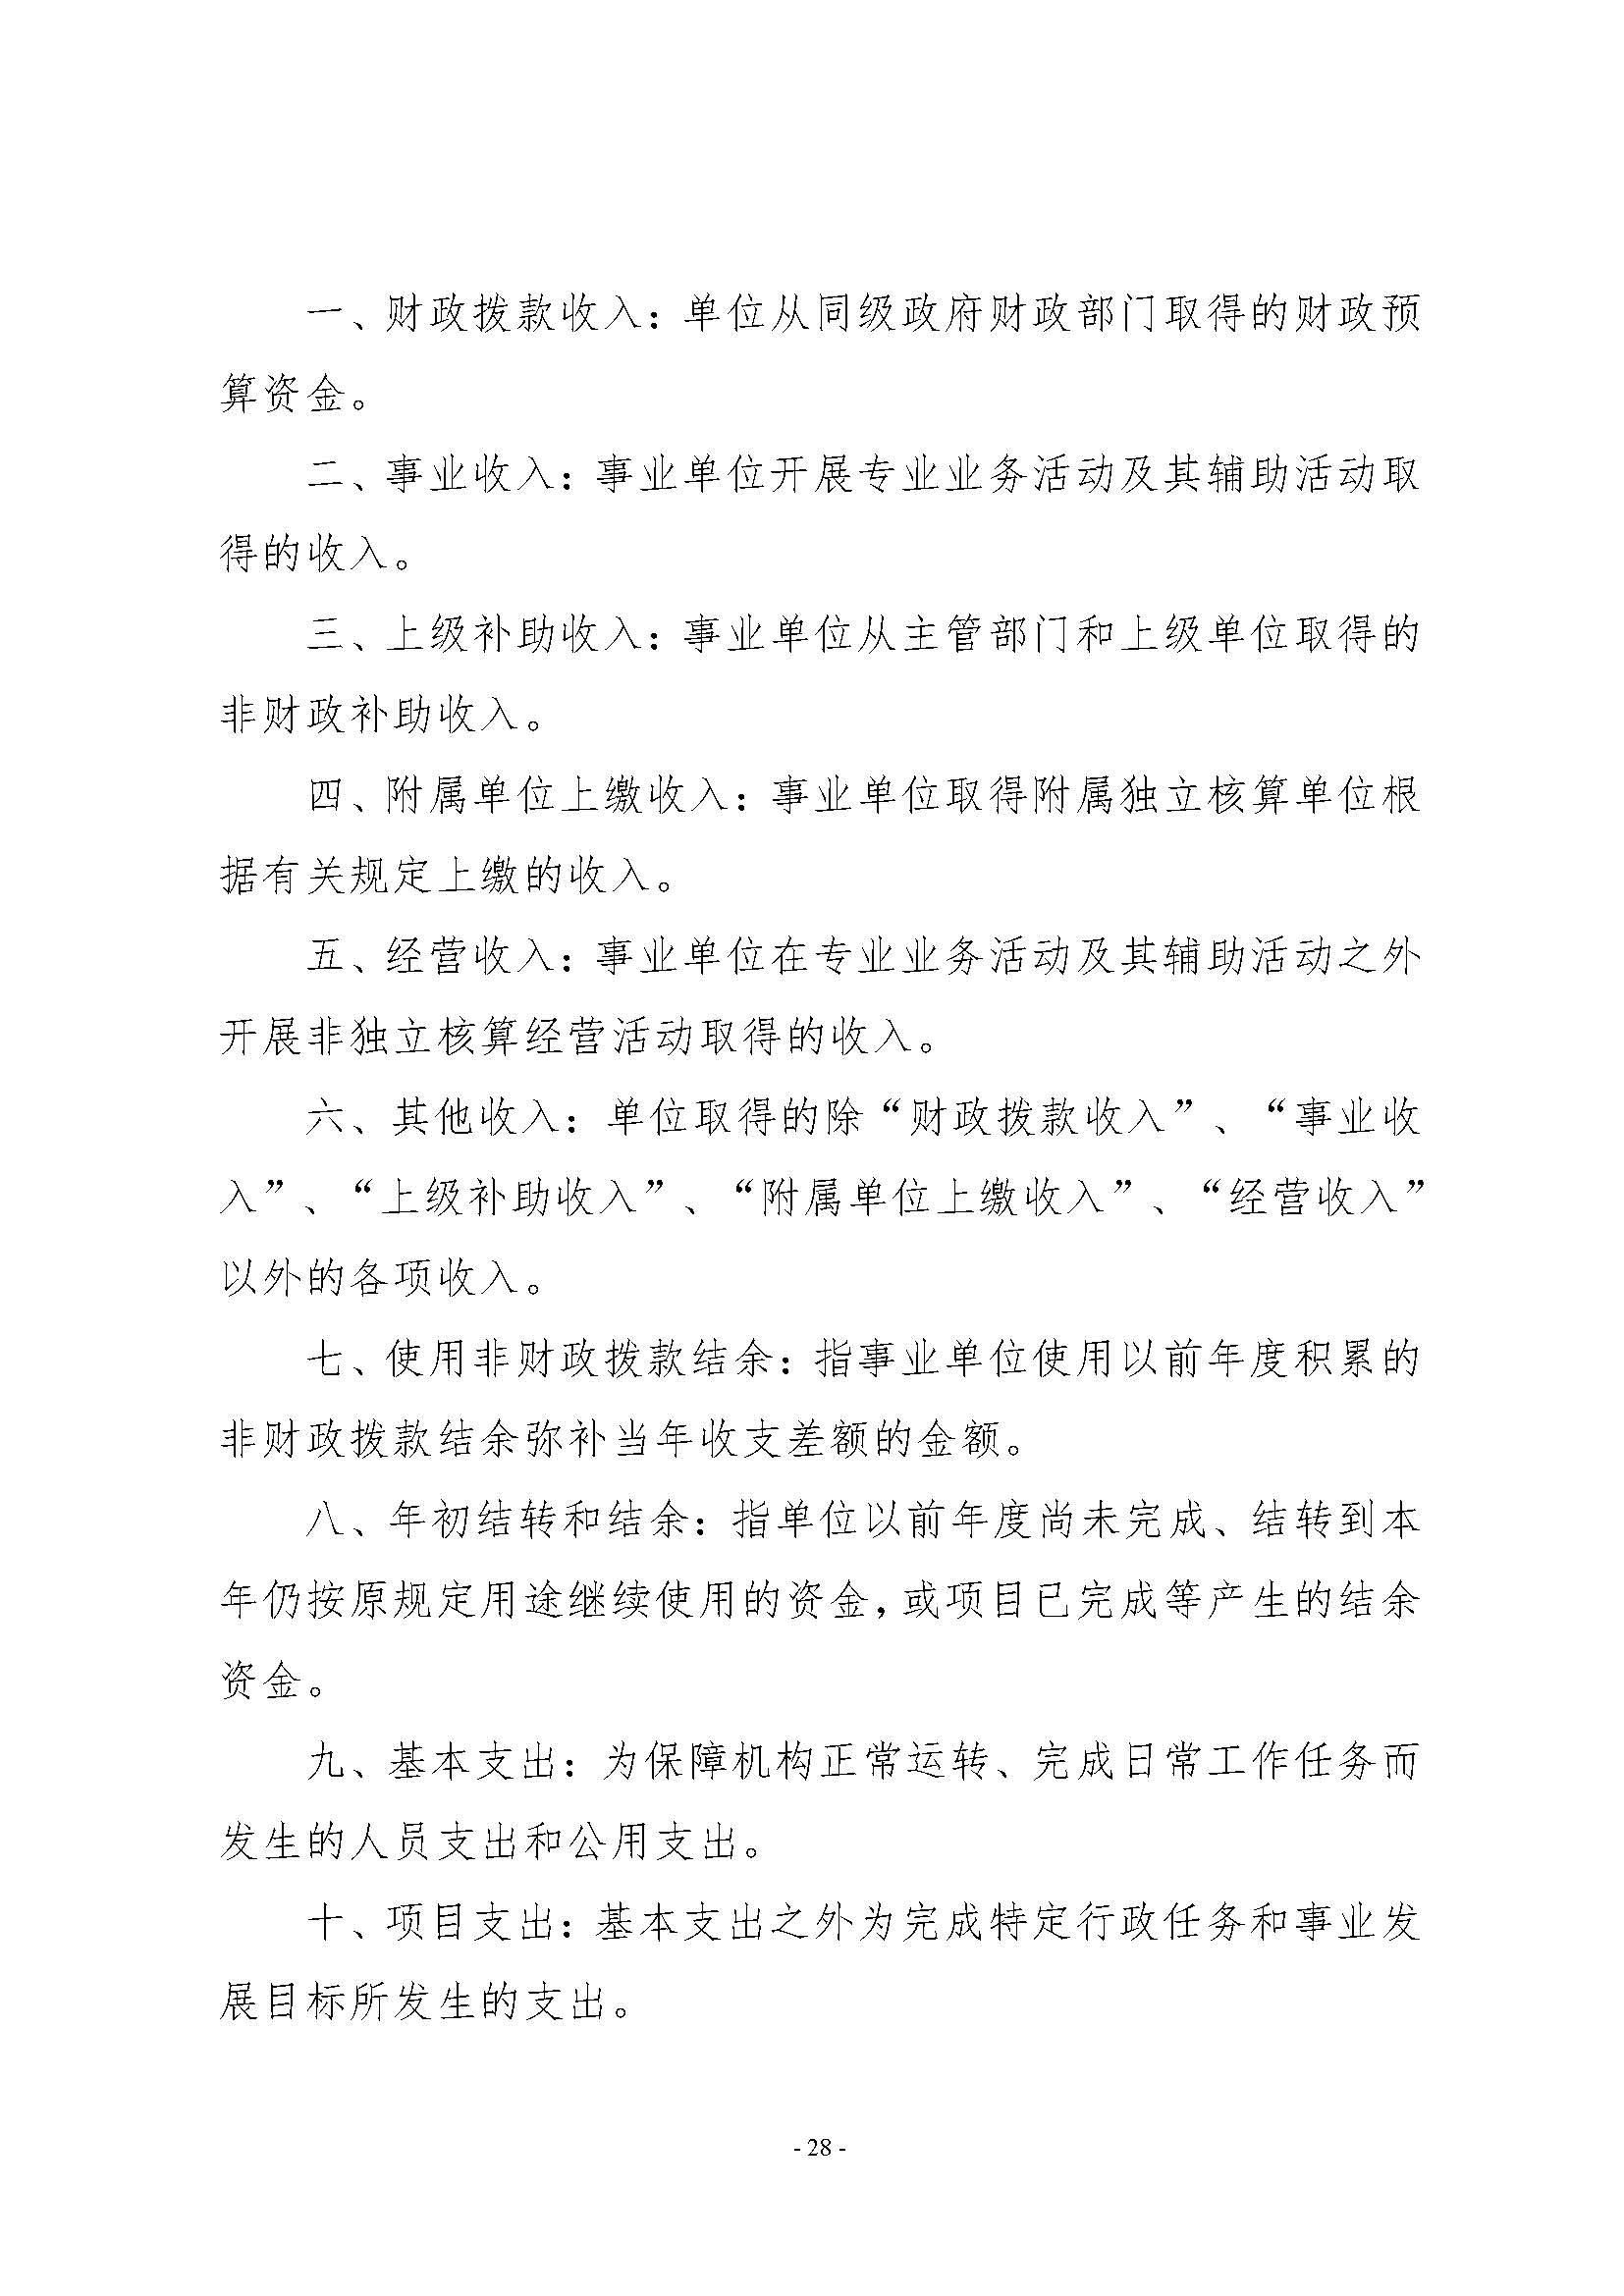 河南省水利科学研究院2022年年度省直部门决算公开(2)_页面_28.jpg